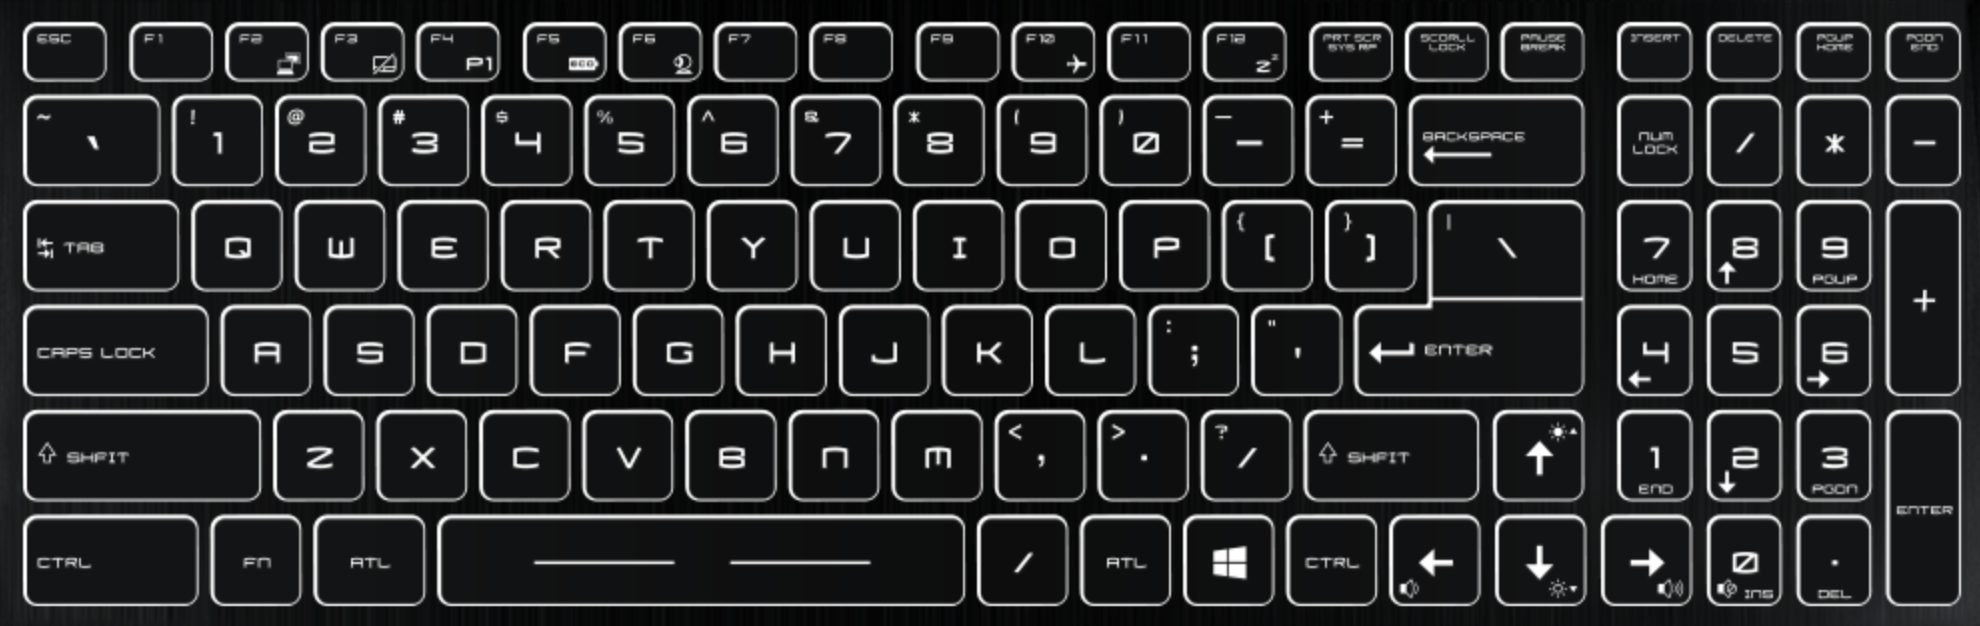 msi-GS70-laptop-keyboard-key-replacement